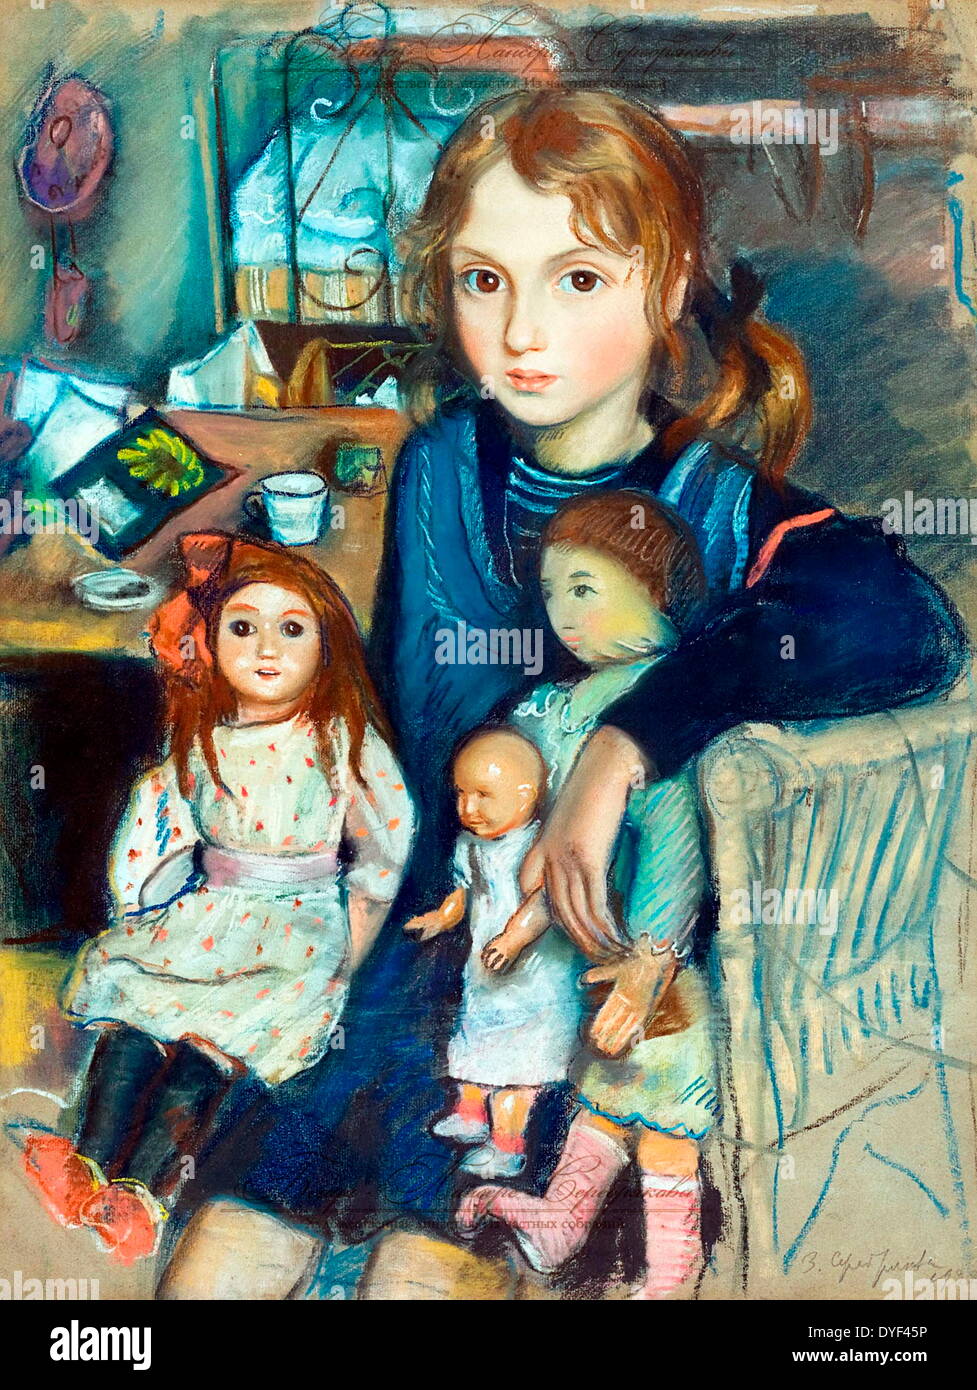 Katya durch russische Künstler Zinaida Serebriakova. Zwischen 1884-1967 lebte. Zinaida war unter den Ersten, die russischen Künstlerinnen, Anerkennung zu gewinnen. Das Bild zeigt die Darstellung eines jungen Mädchens und ihrer Puppen. Stockfoto